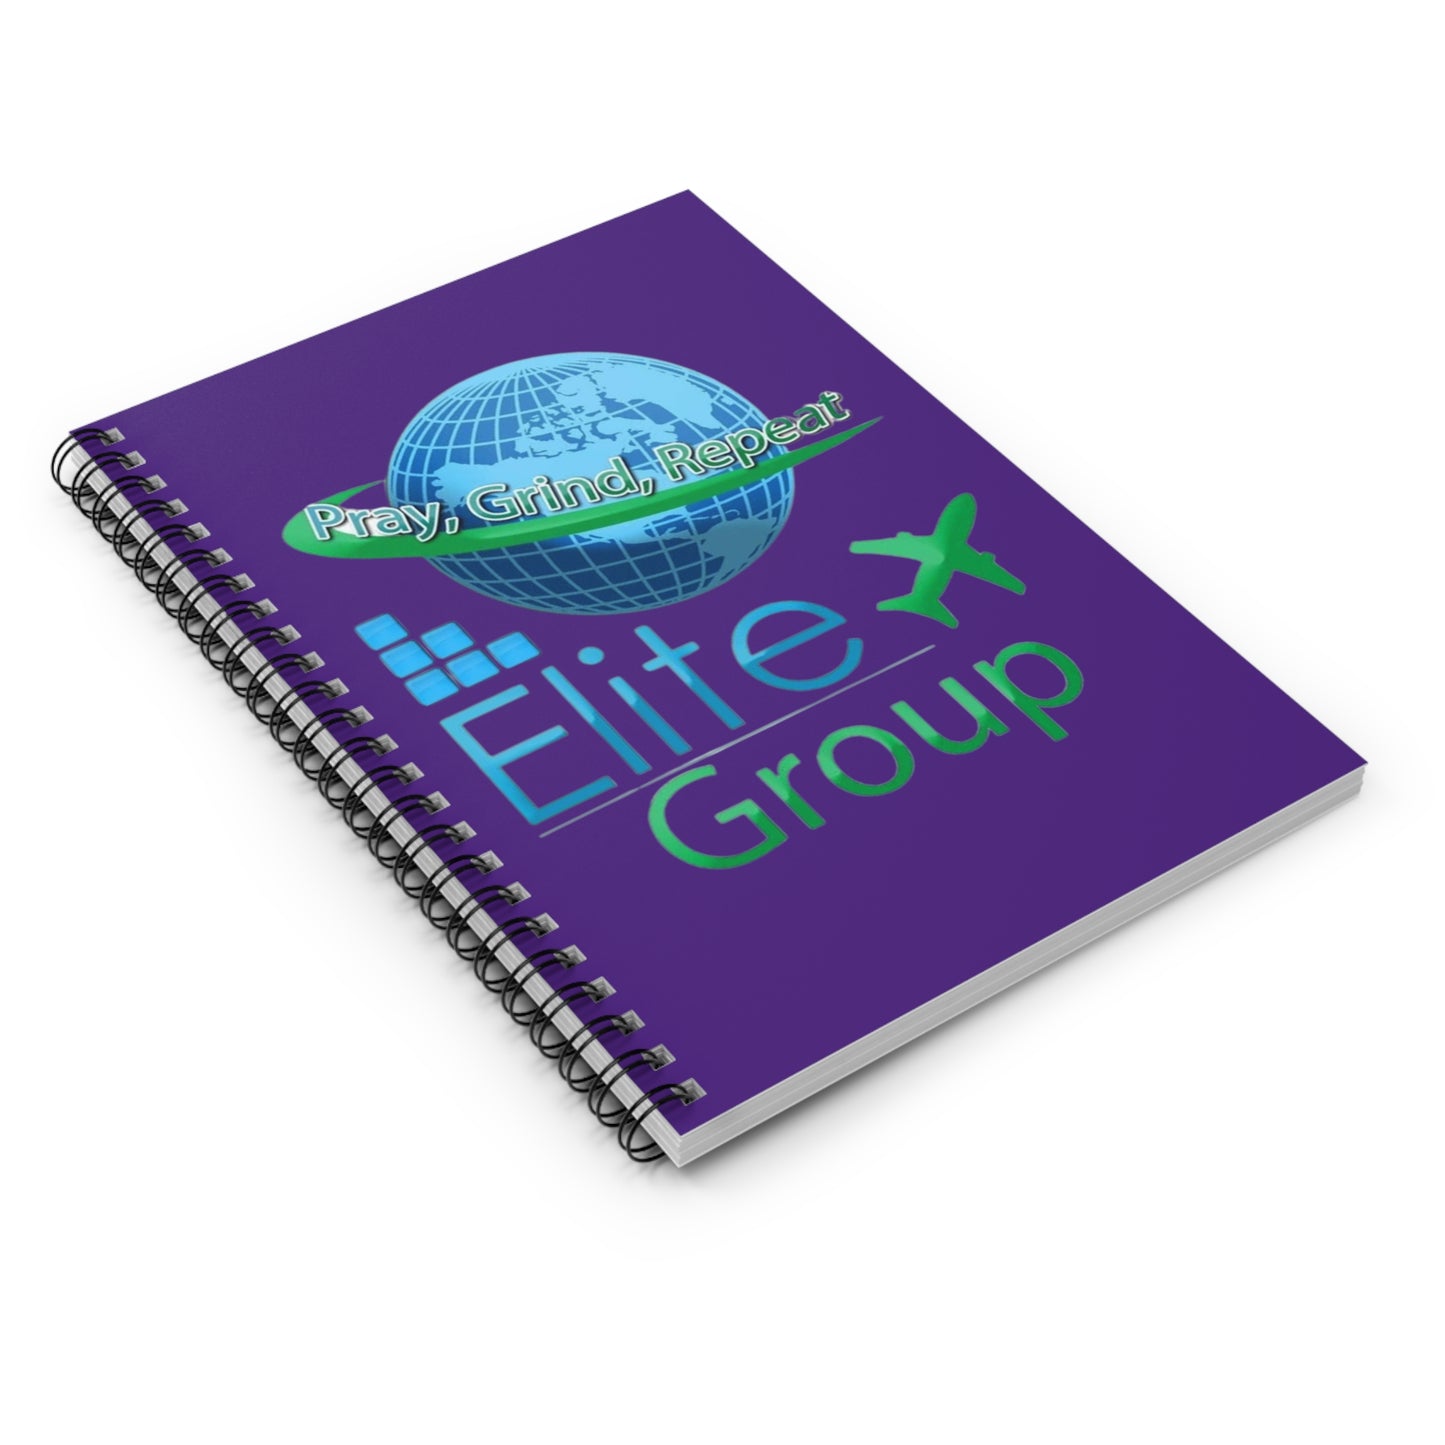 Elite Group Spiral Notebook - Ruled Line